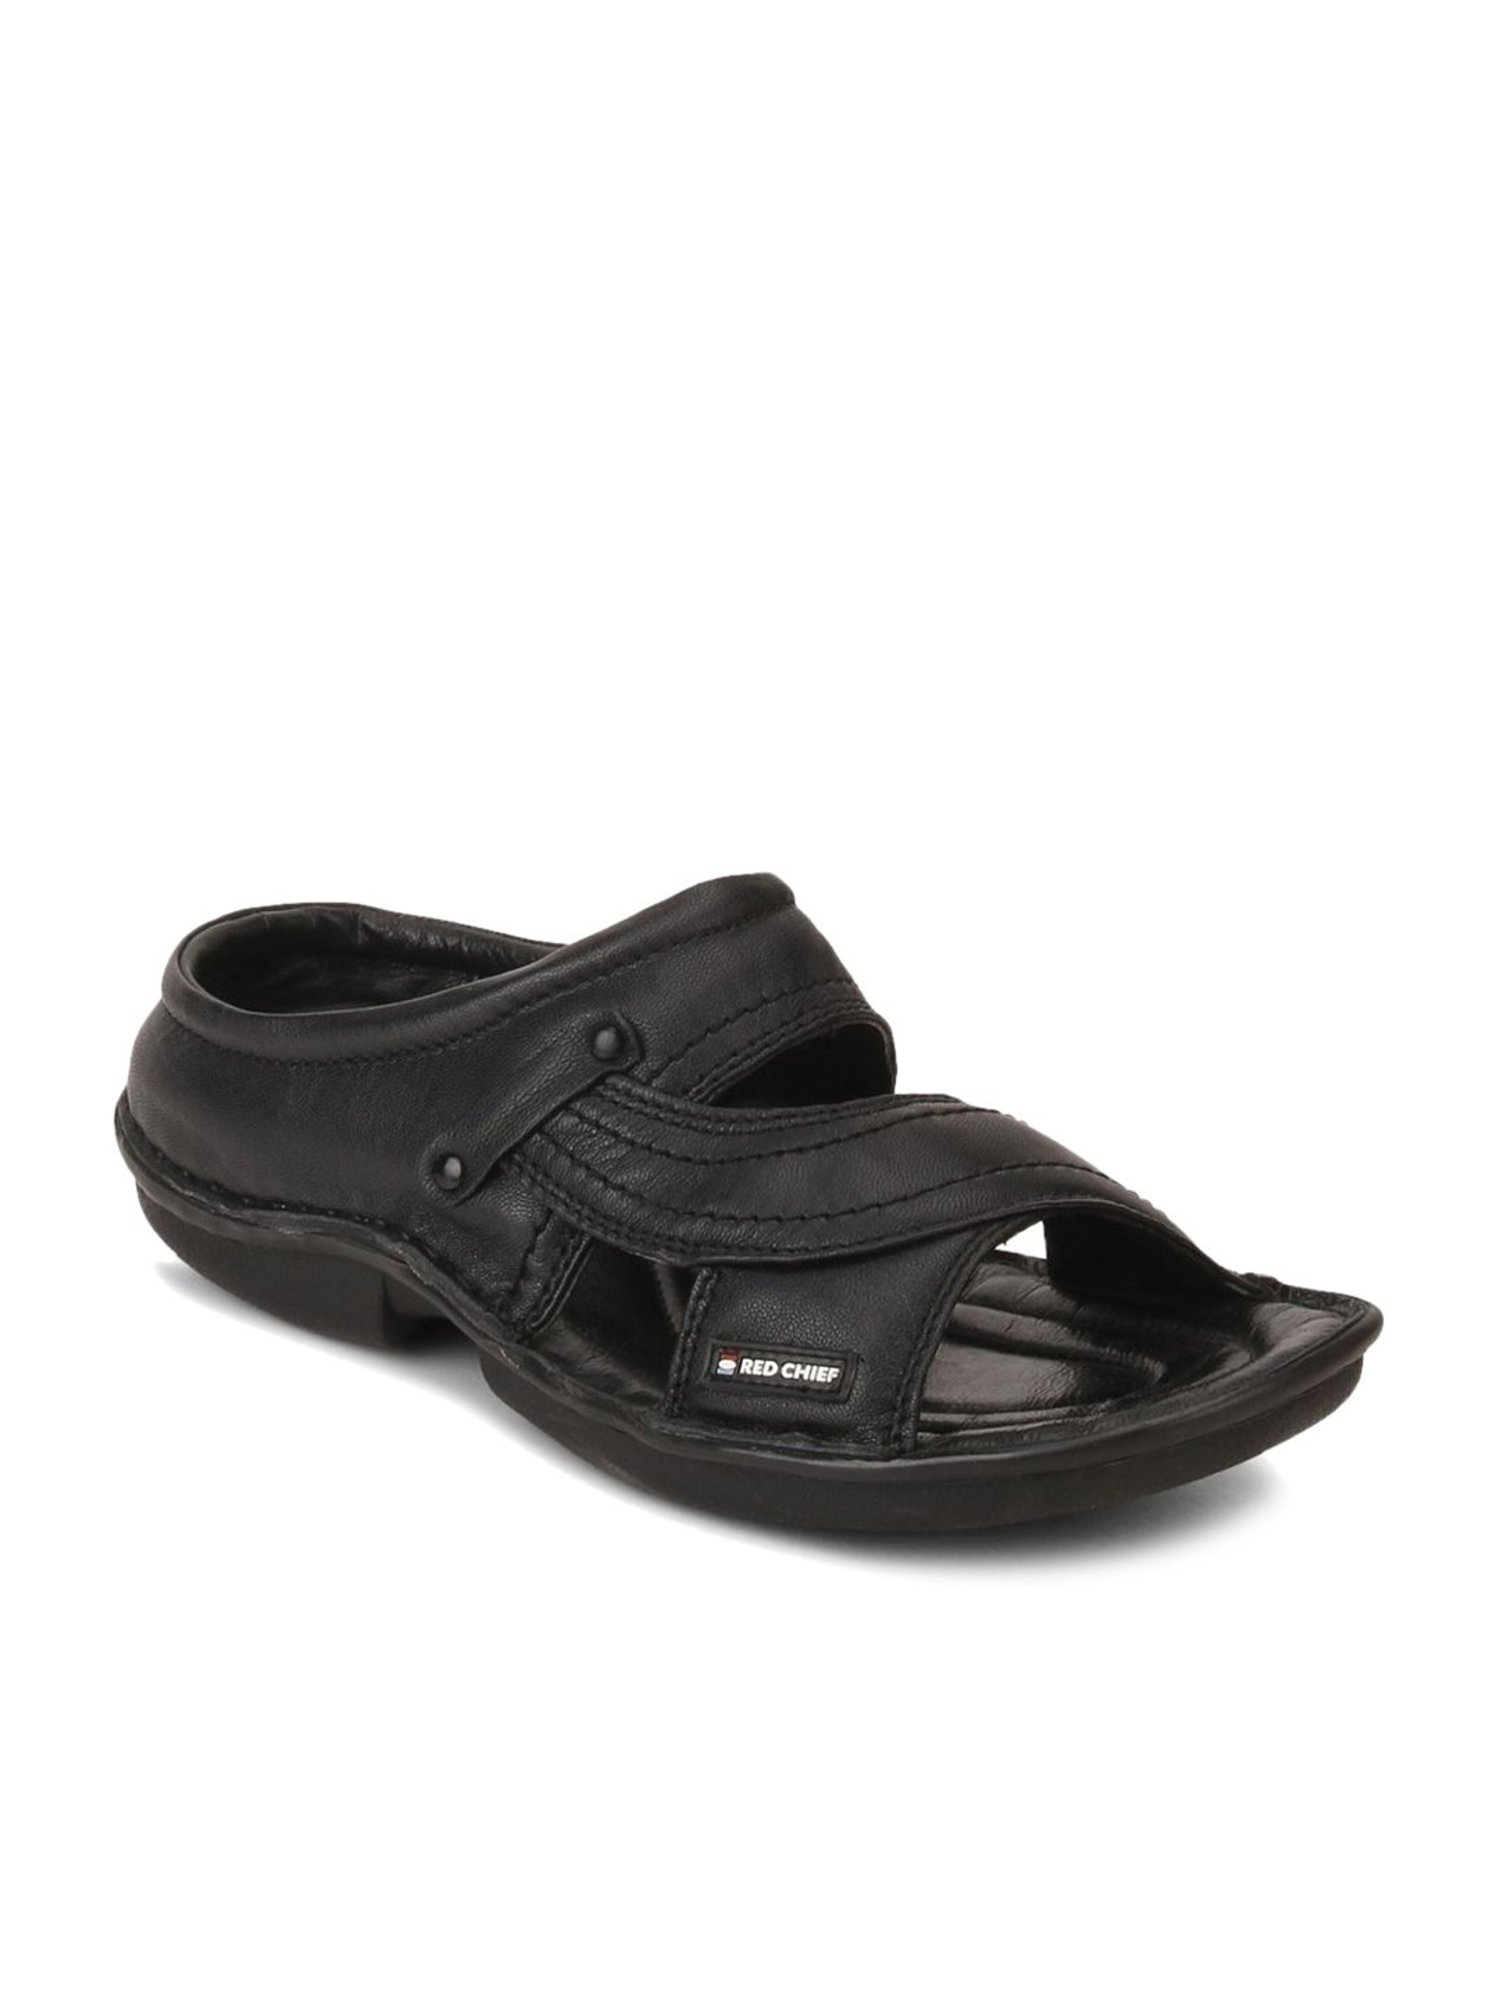 Buy Red Chief Men Beige Leather Comfort Sandals - Sandals for Men 8628009 |  Myntra